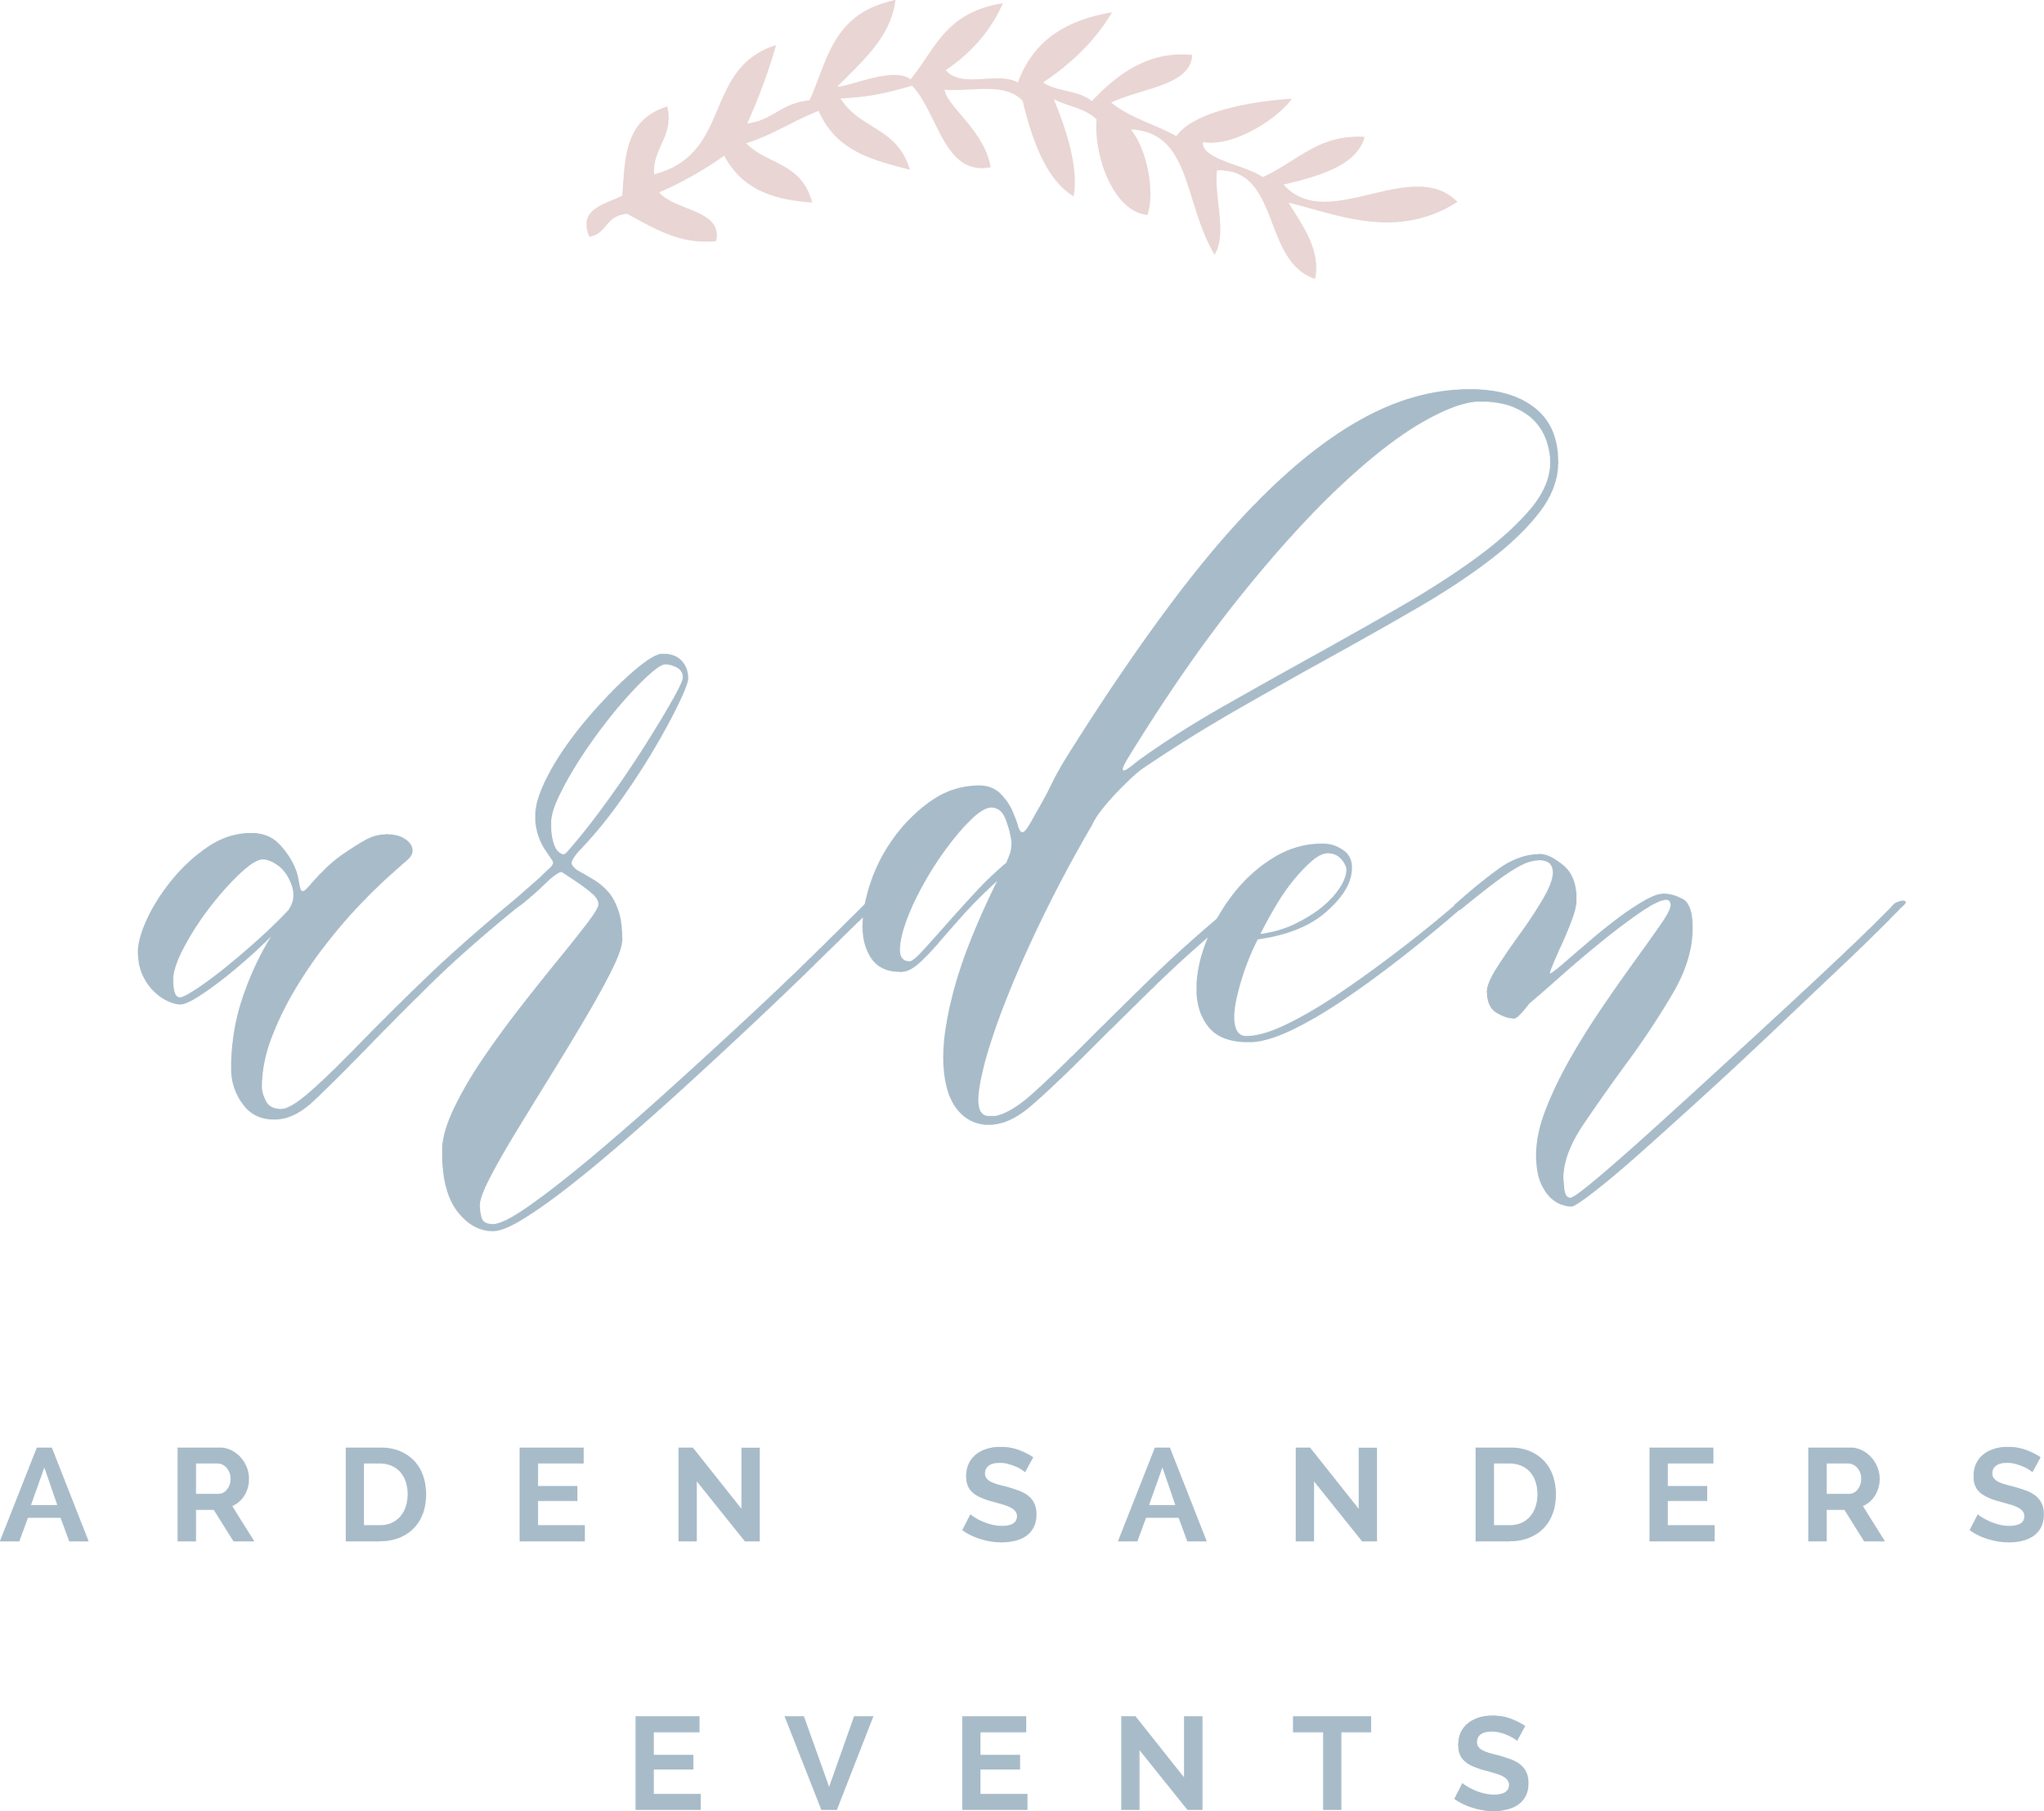 Arden Sanders Events